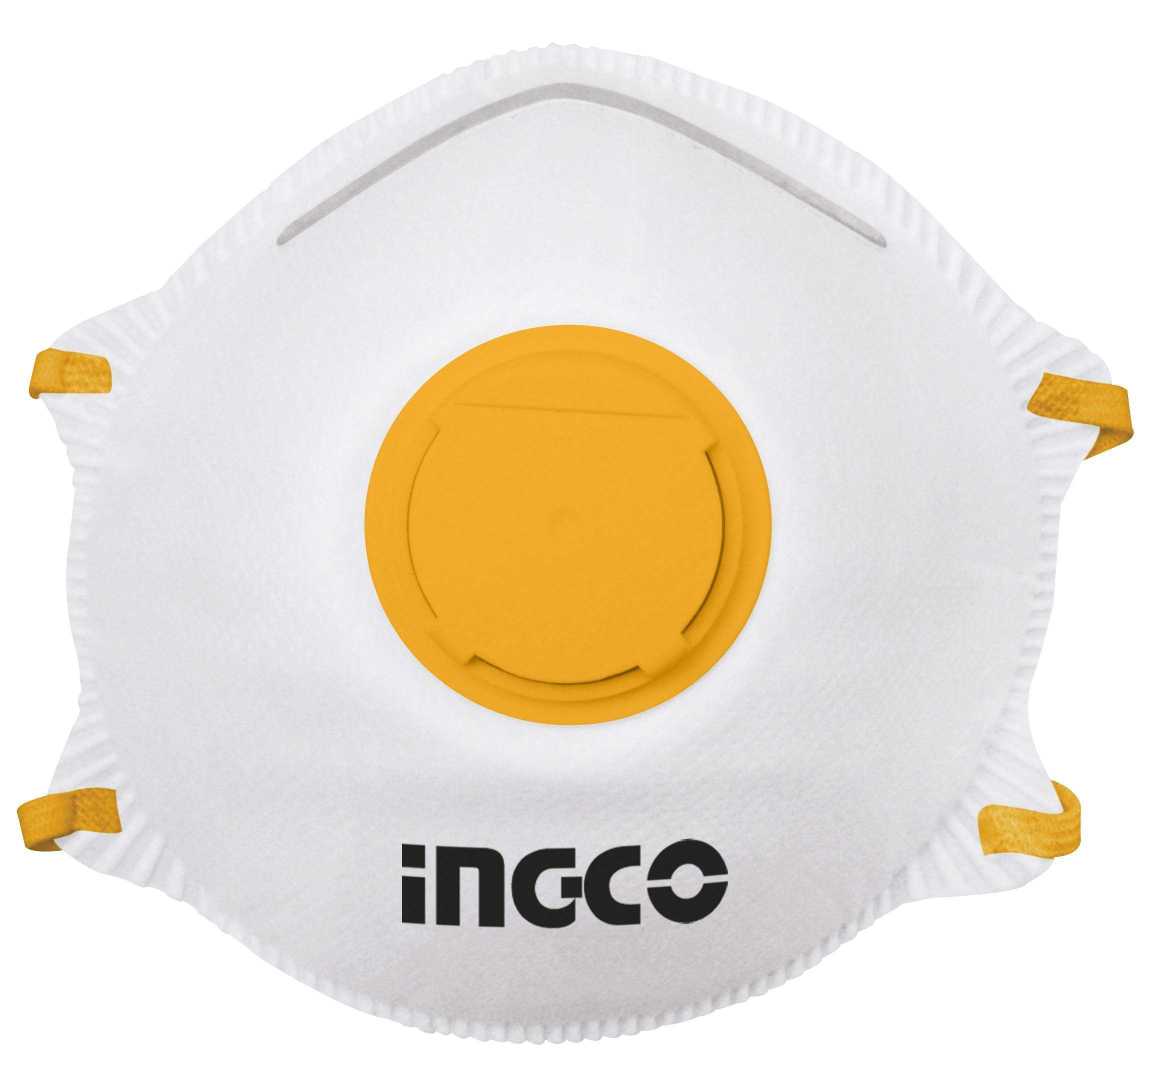 Ingco dust mask